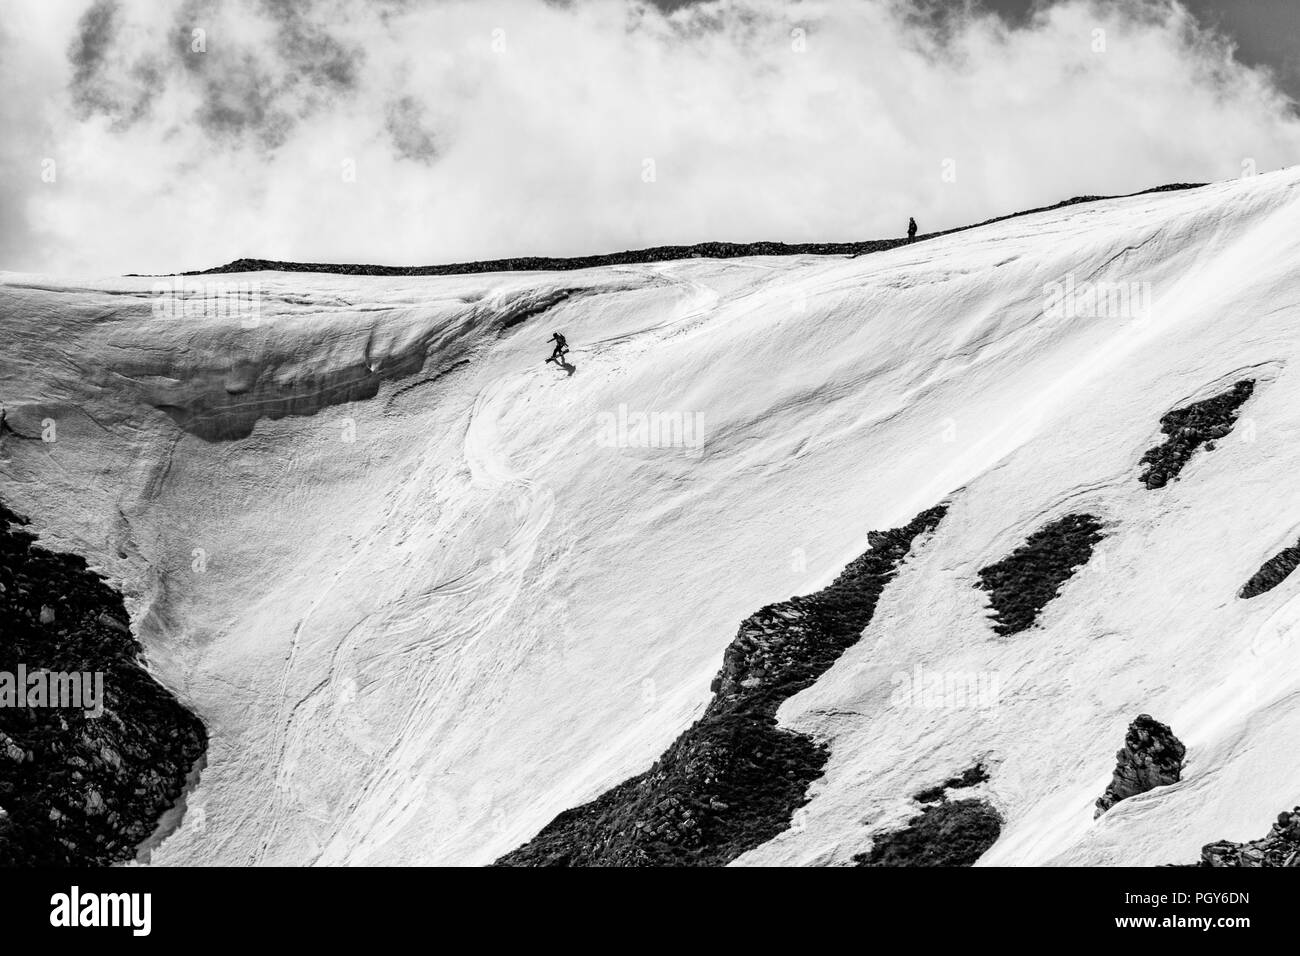 Ein freeride Snowboarder, der Sprung von einer Klippe und macht seinen Trick Stockfoto